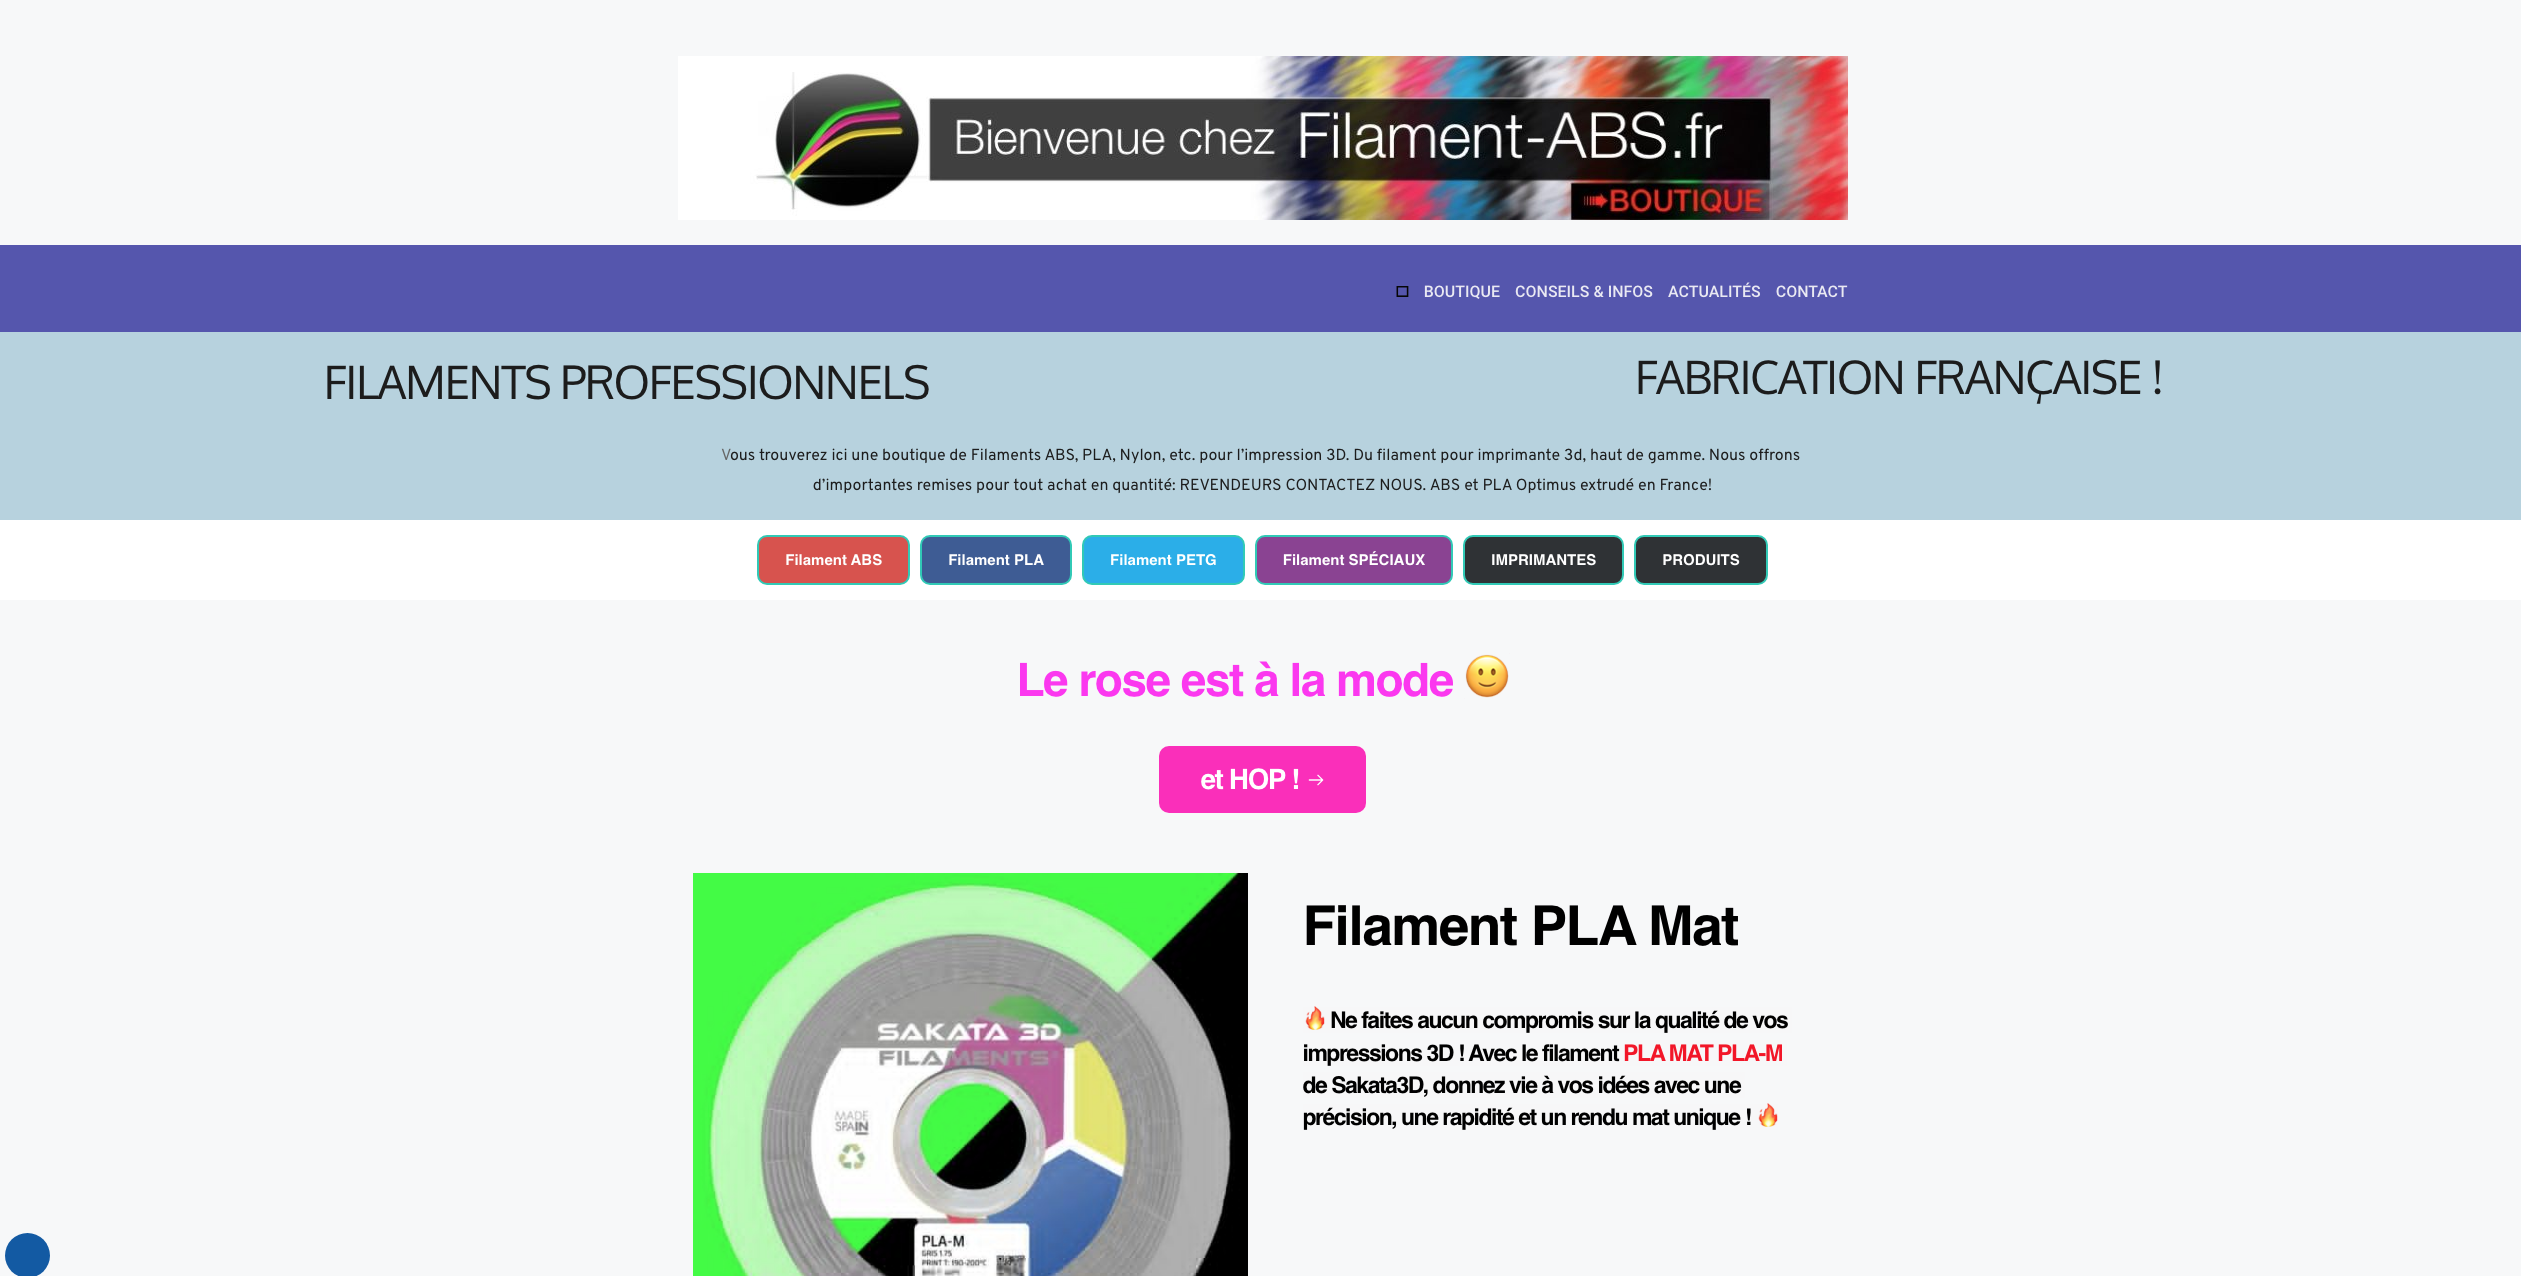 Filaments-abs.fr